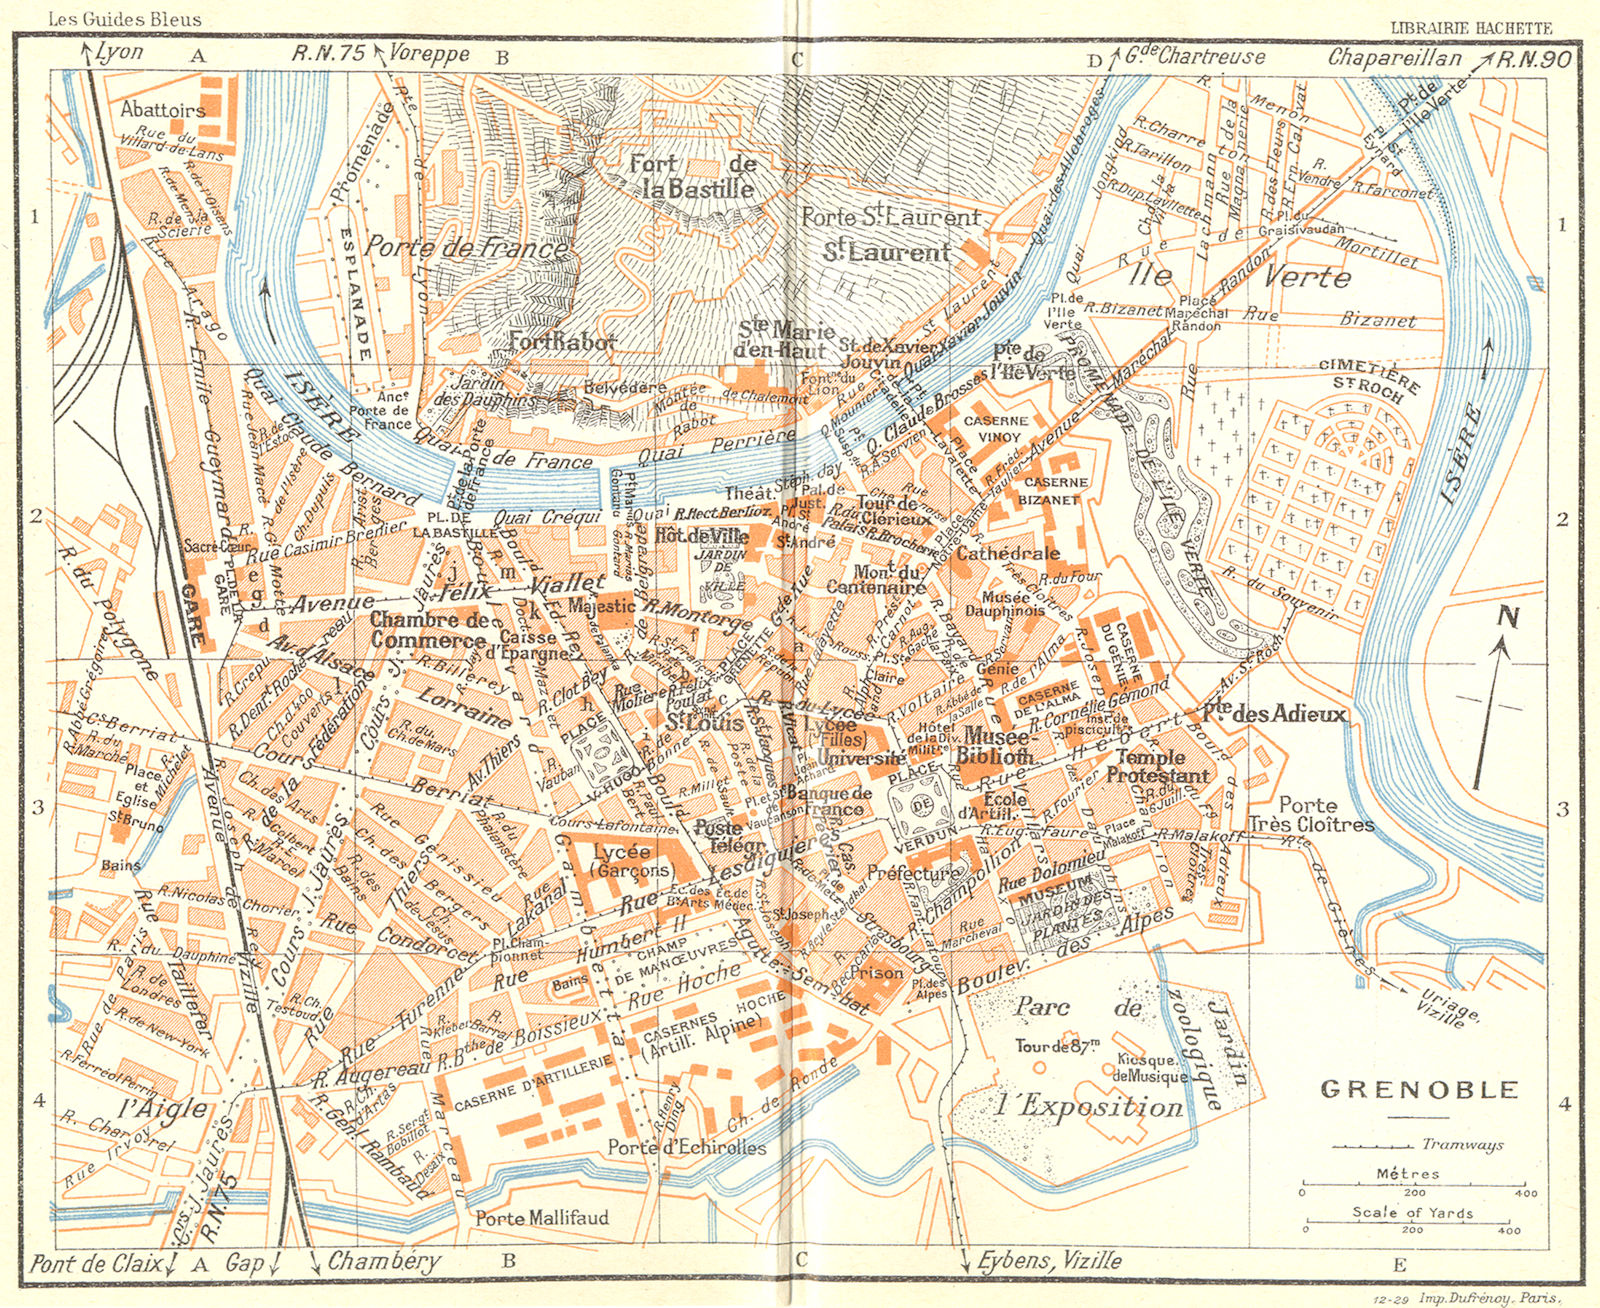 FRANCE. Grenoble 1926 old vintage map plan chart